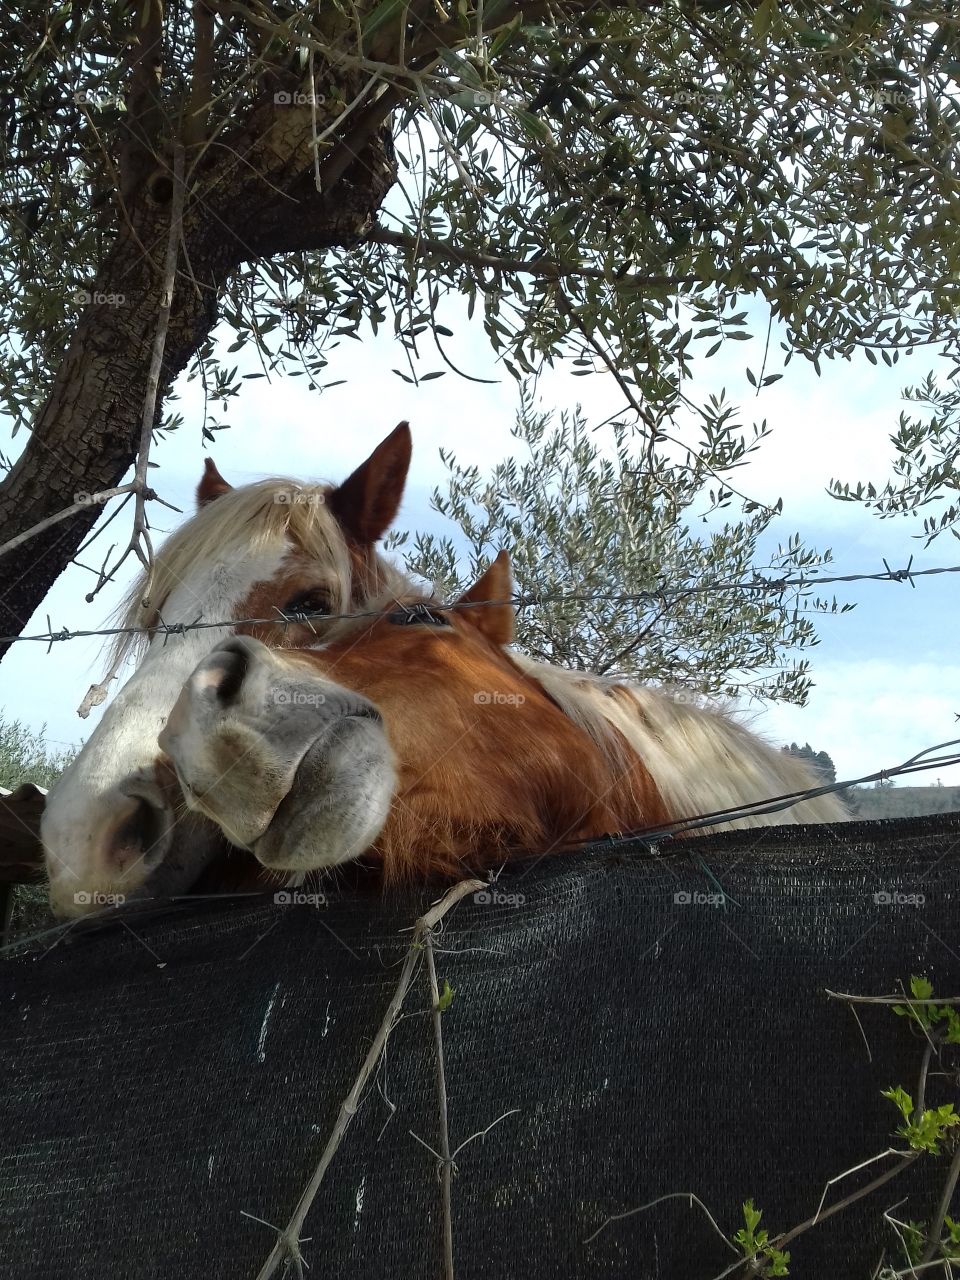 tender cute horses